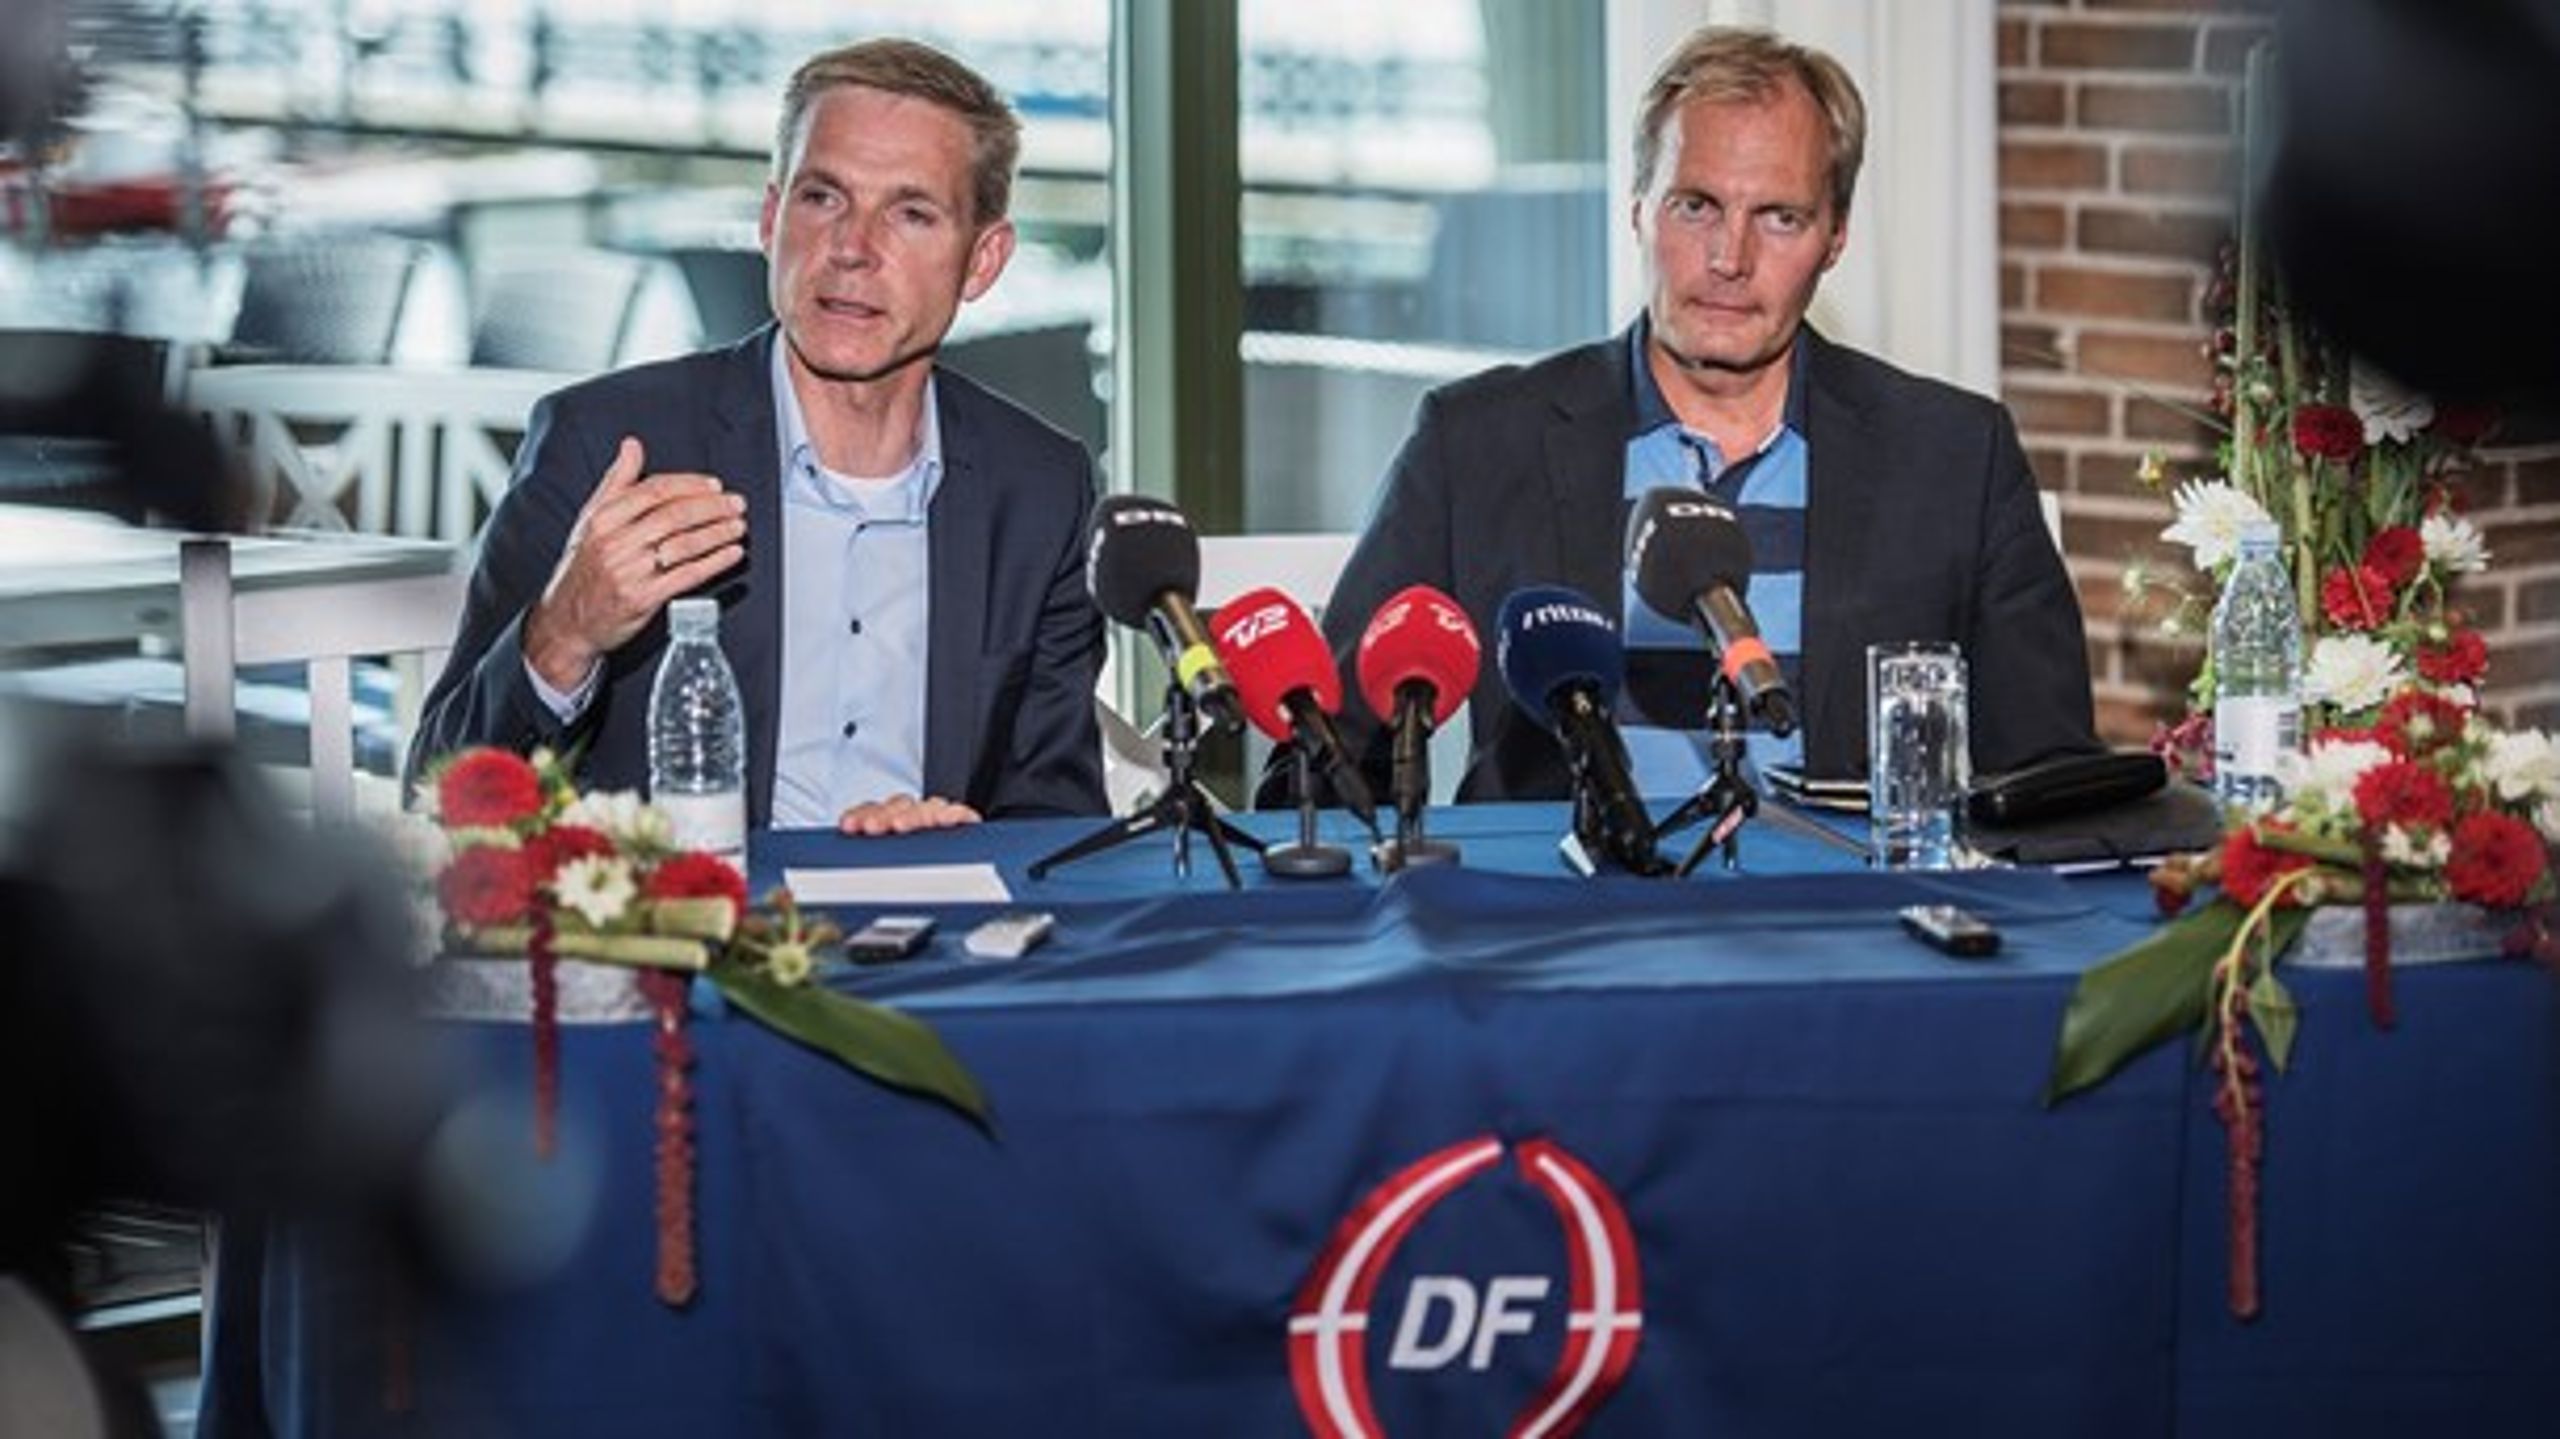 DF er i øjeblikket mere populære blandt arbejderne end Socialdemokratiet. Det viser en ny undersøgelse, som valgforsker Kasper Møller Hansen har lavet for Altinget.